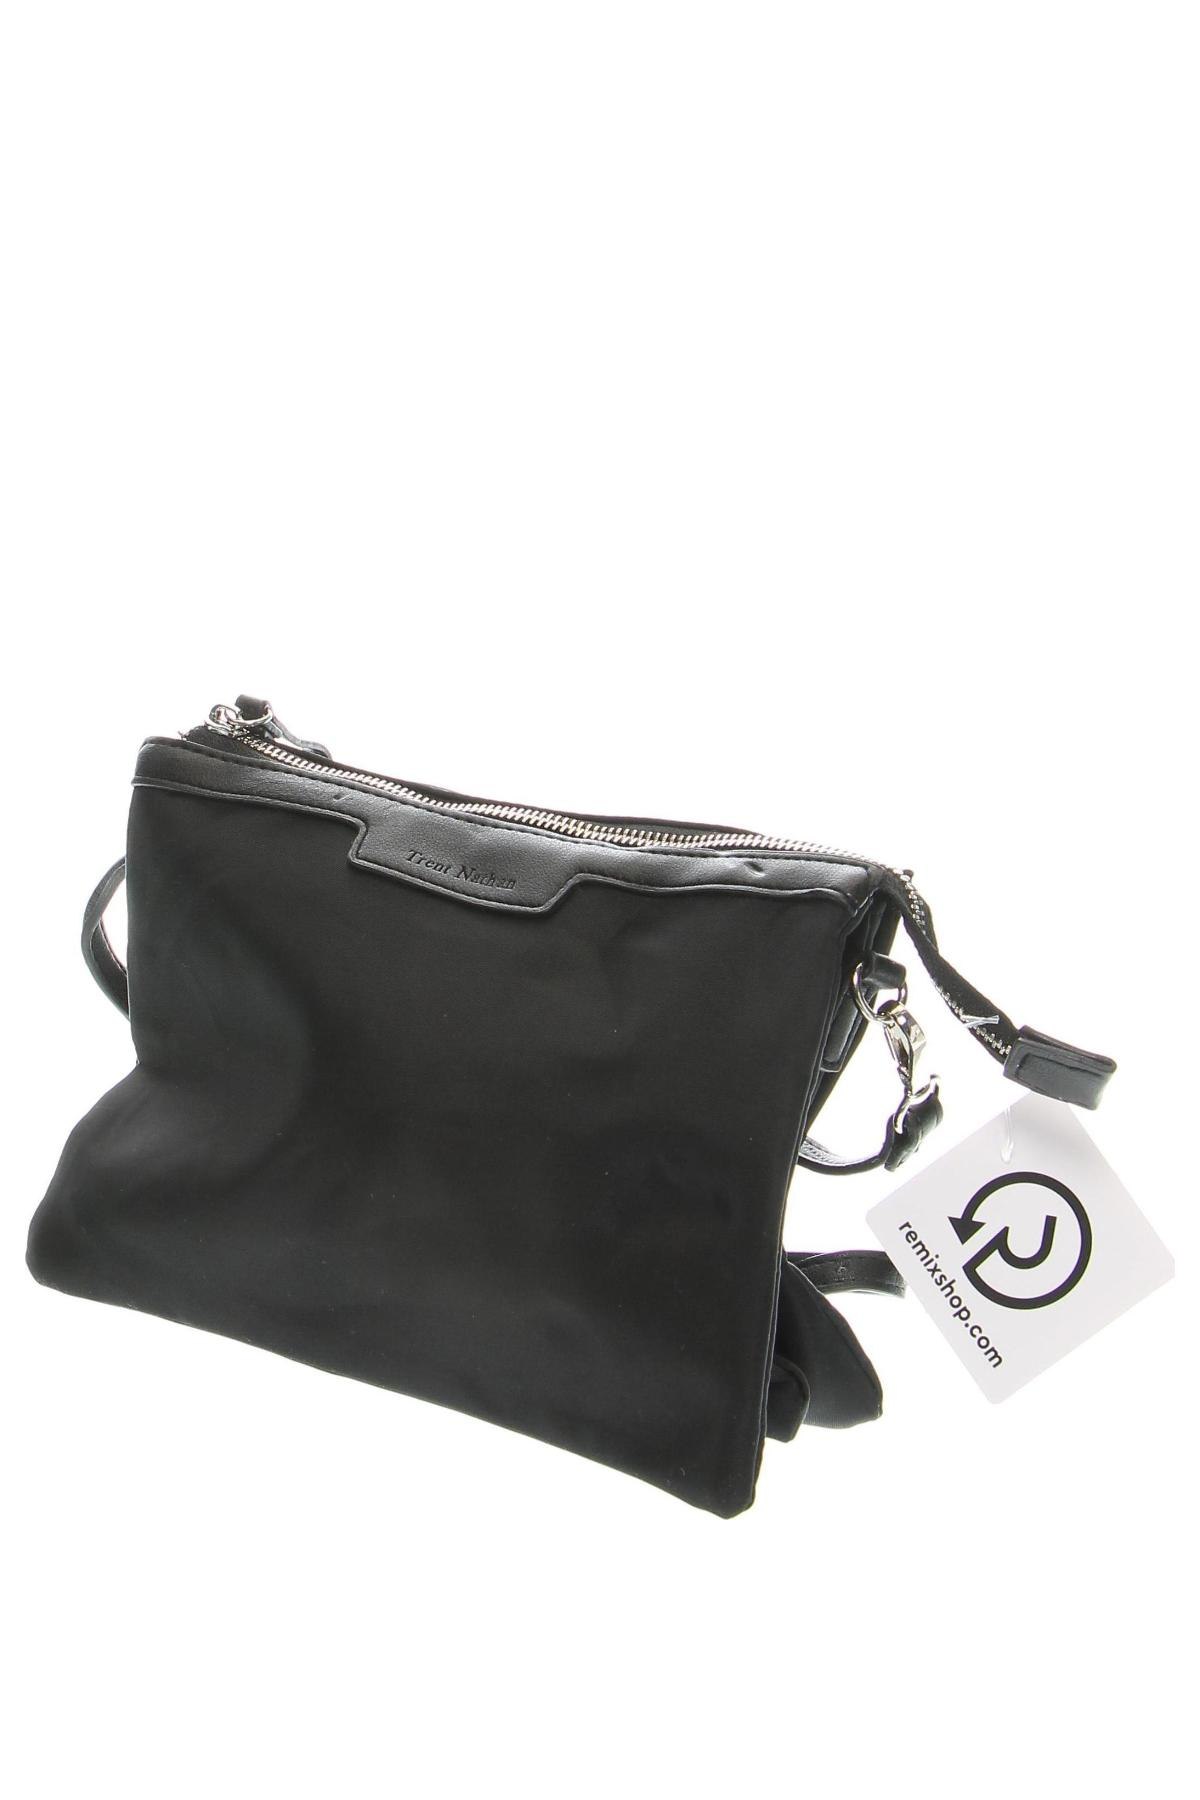 Γυναικεία τσάντα Trent Nathan, Χρώμα Μαύρο, Τιμή 23,51 €